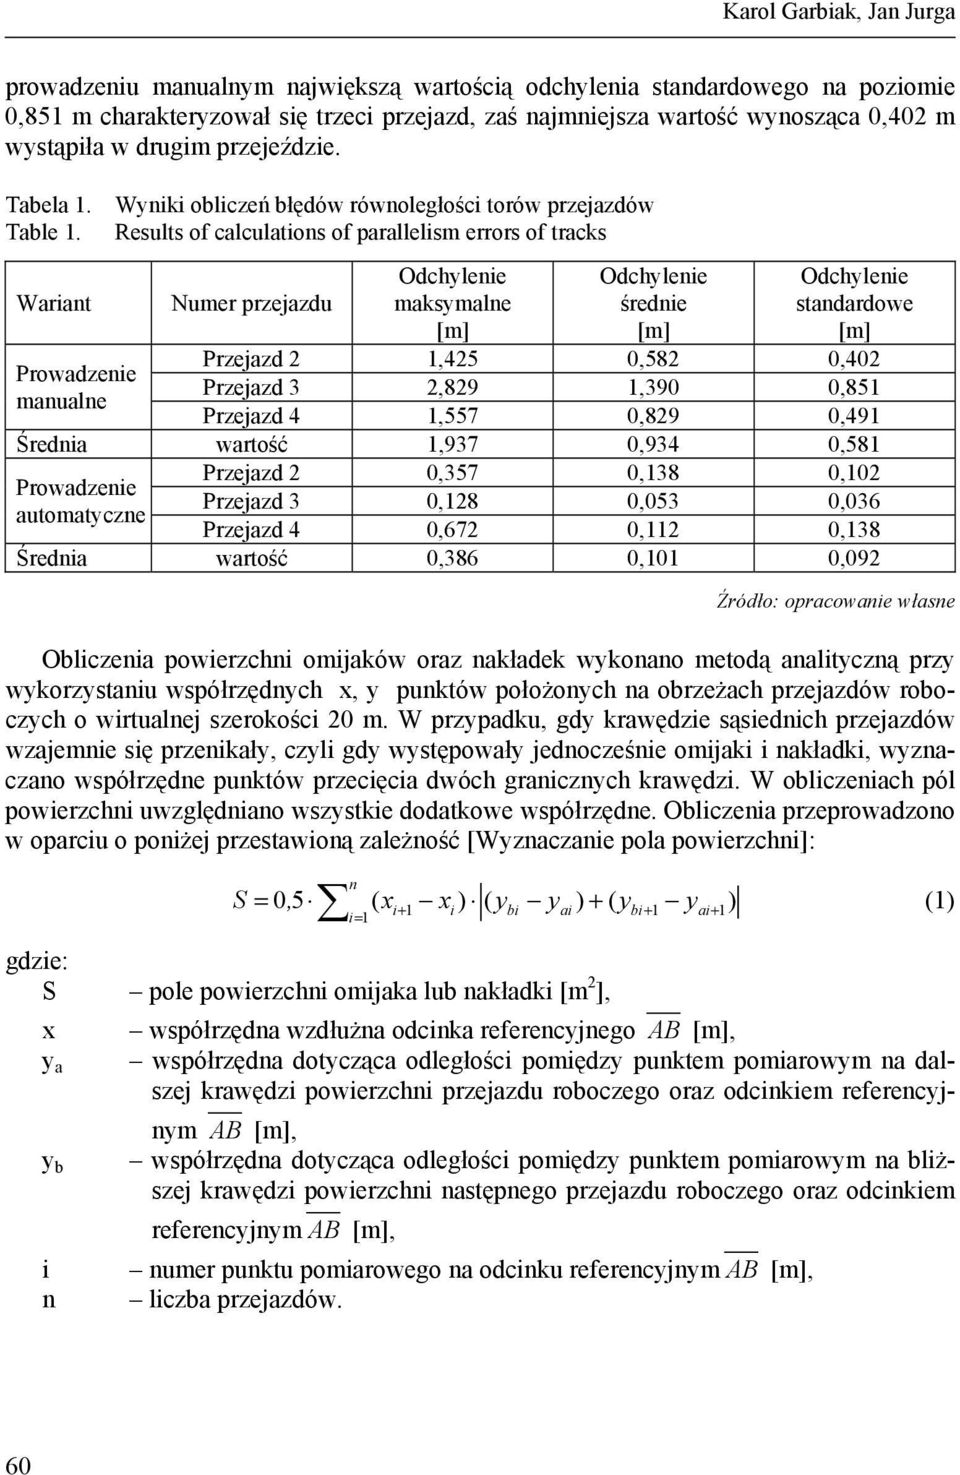 Results of calculations of parallelism errors of tracks Wariant Numer przejazdu Odchylenie maksymalne [m] Odchylenie średnie [m] Odchylenie standardowe [m] Przejazd 2 1,425 0,582 0,402 Prowadzenie